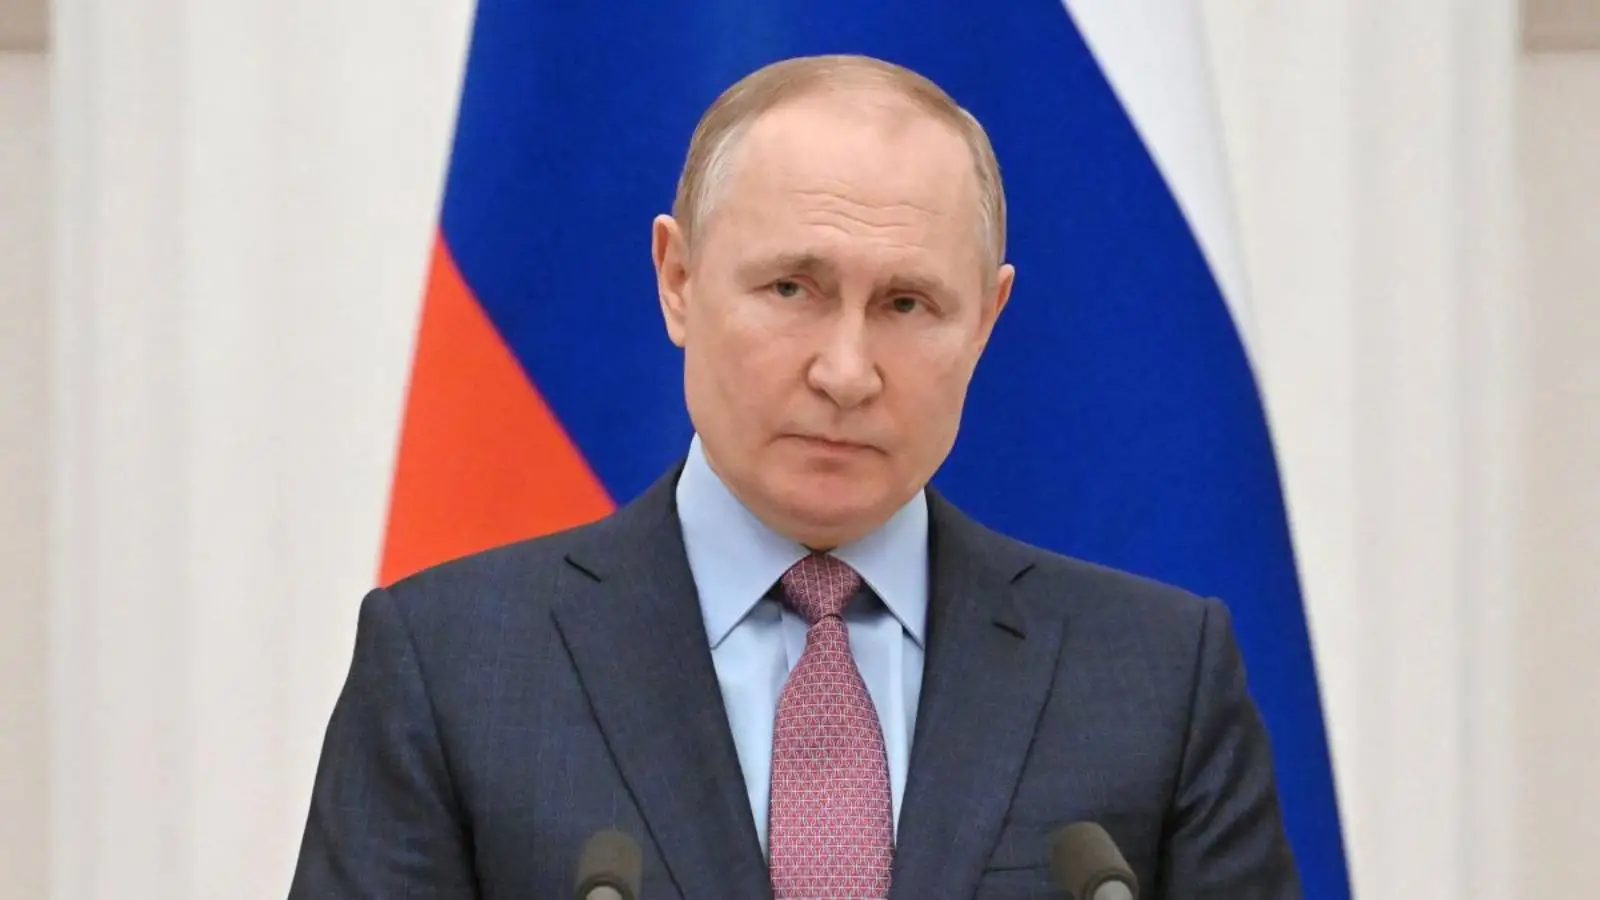 Vladimir Putin sustine Armele Rusiei sunt mai Avansate decat cele ale NATO